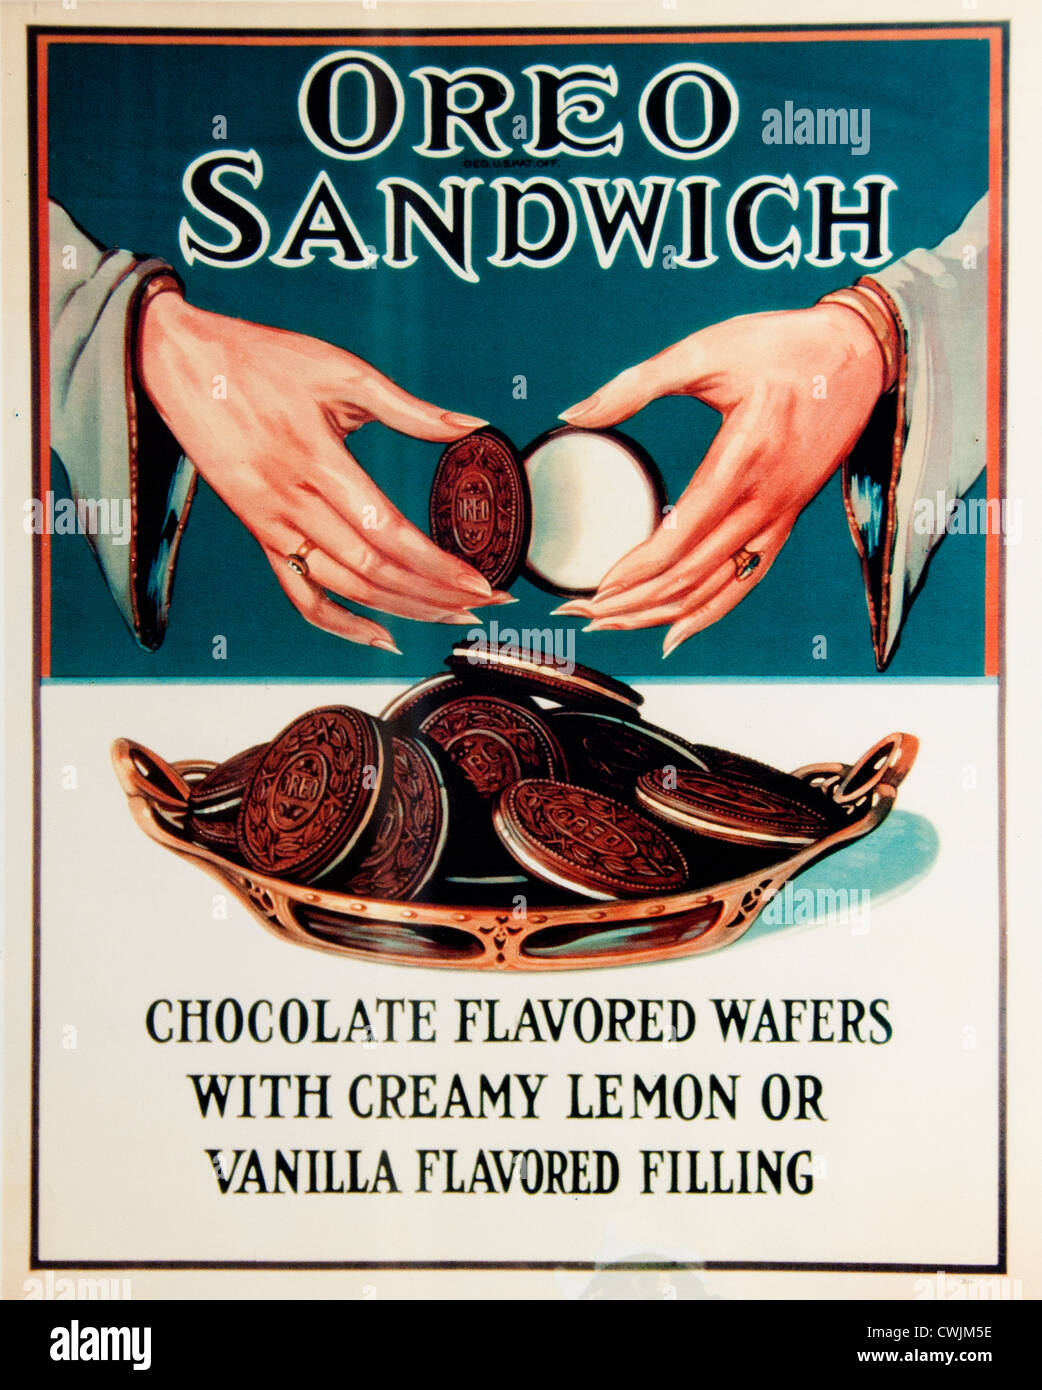 Oreo Sandwich Baftas con sabor a chocolate con sabor a limón cremoso o vainilla Manhattan, New York City , American, Estados Unidos de América, Foto de stock